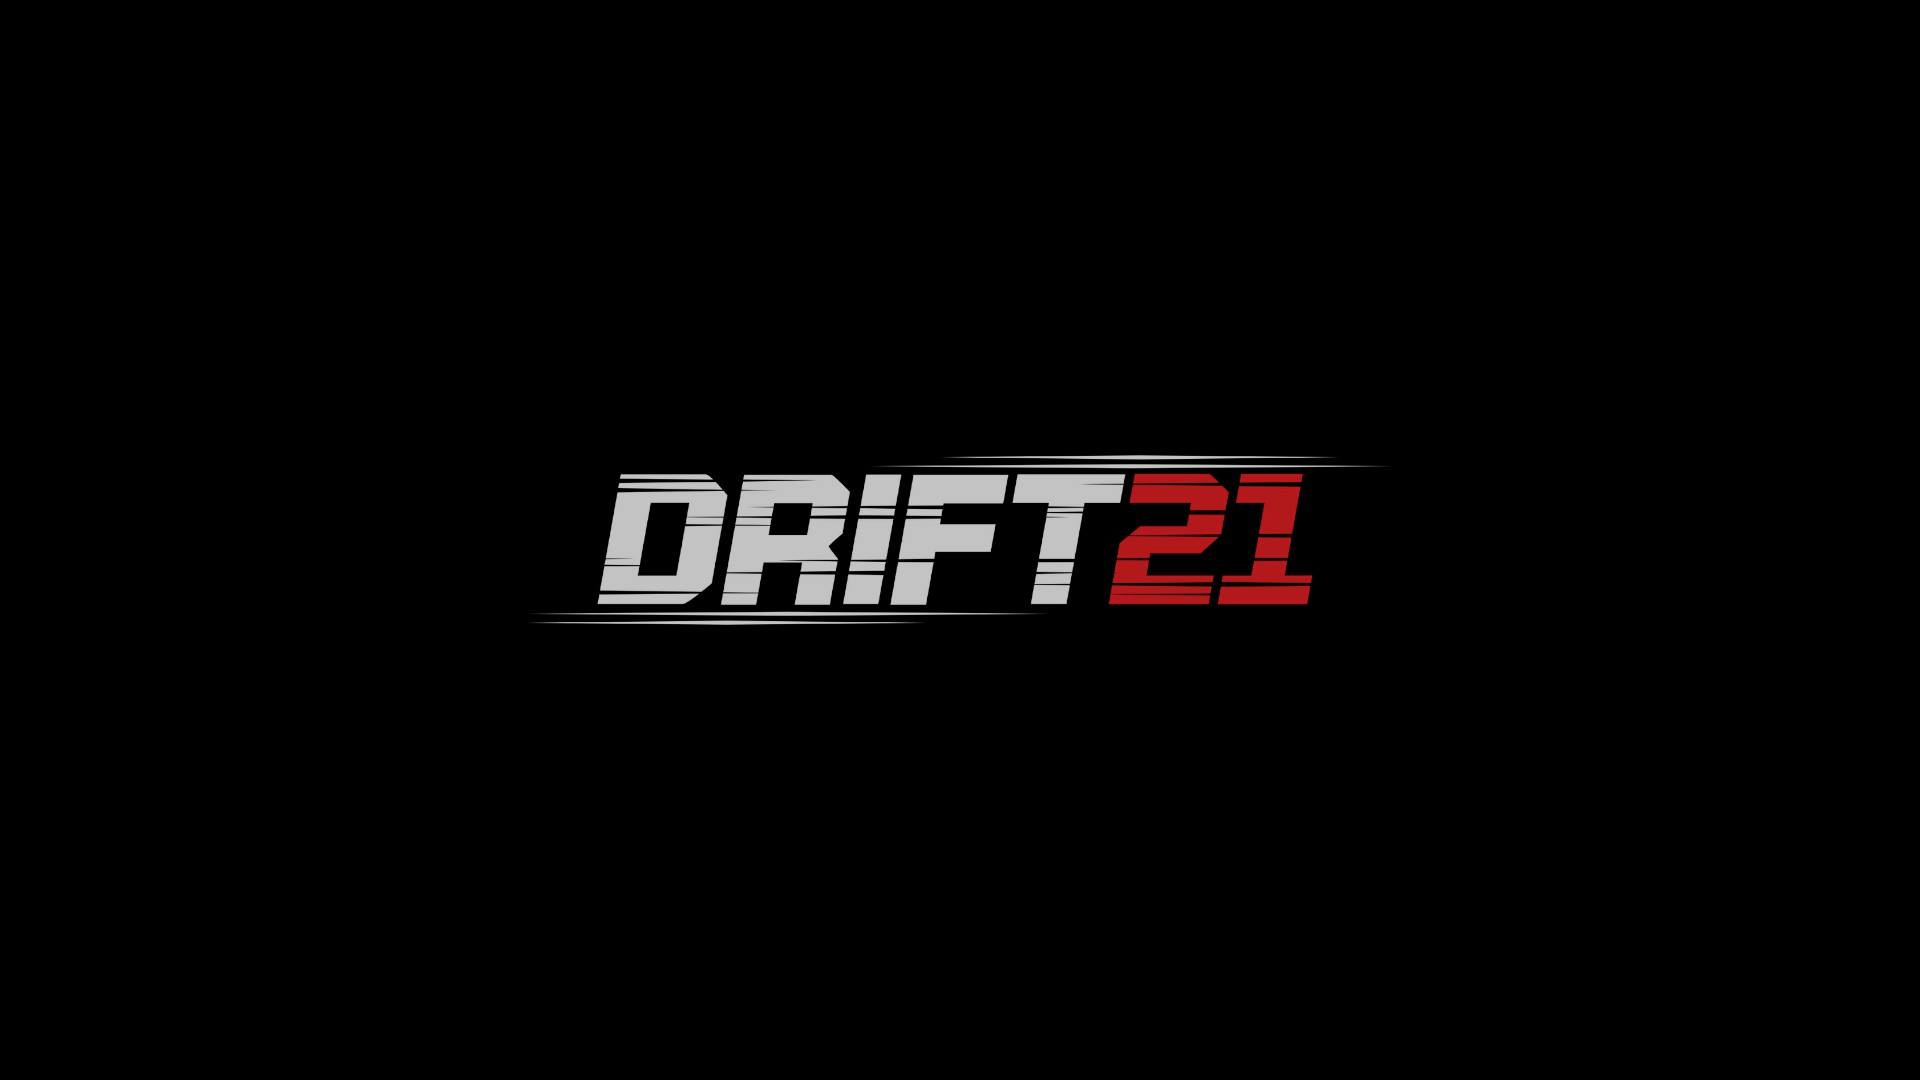 Drift 21 - náhledovka